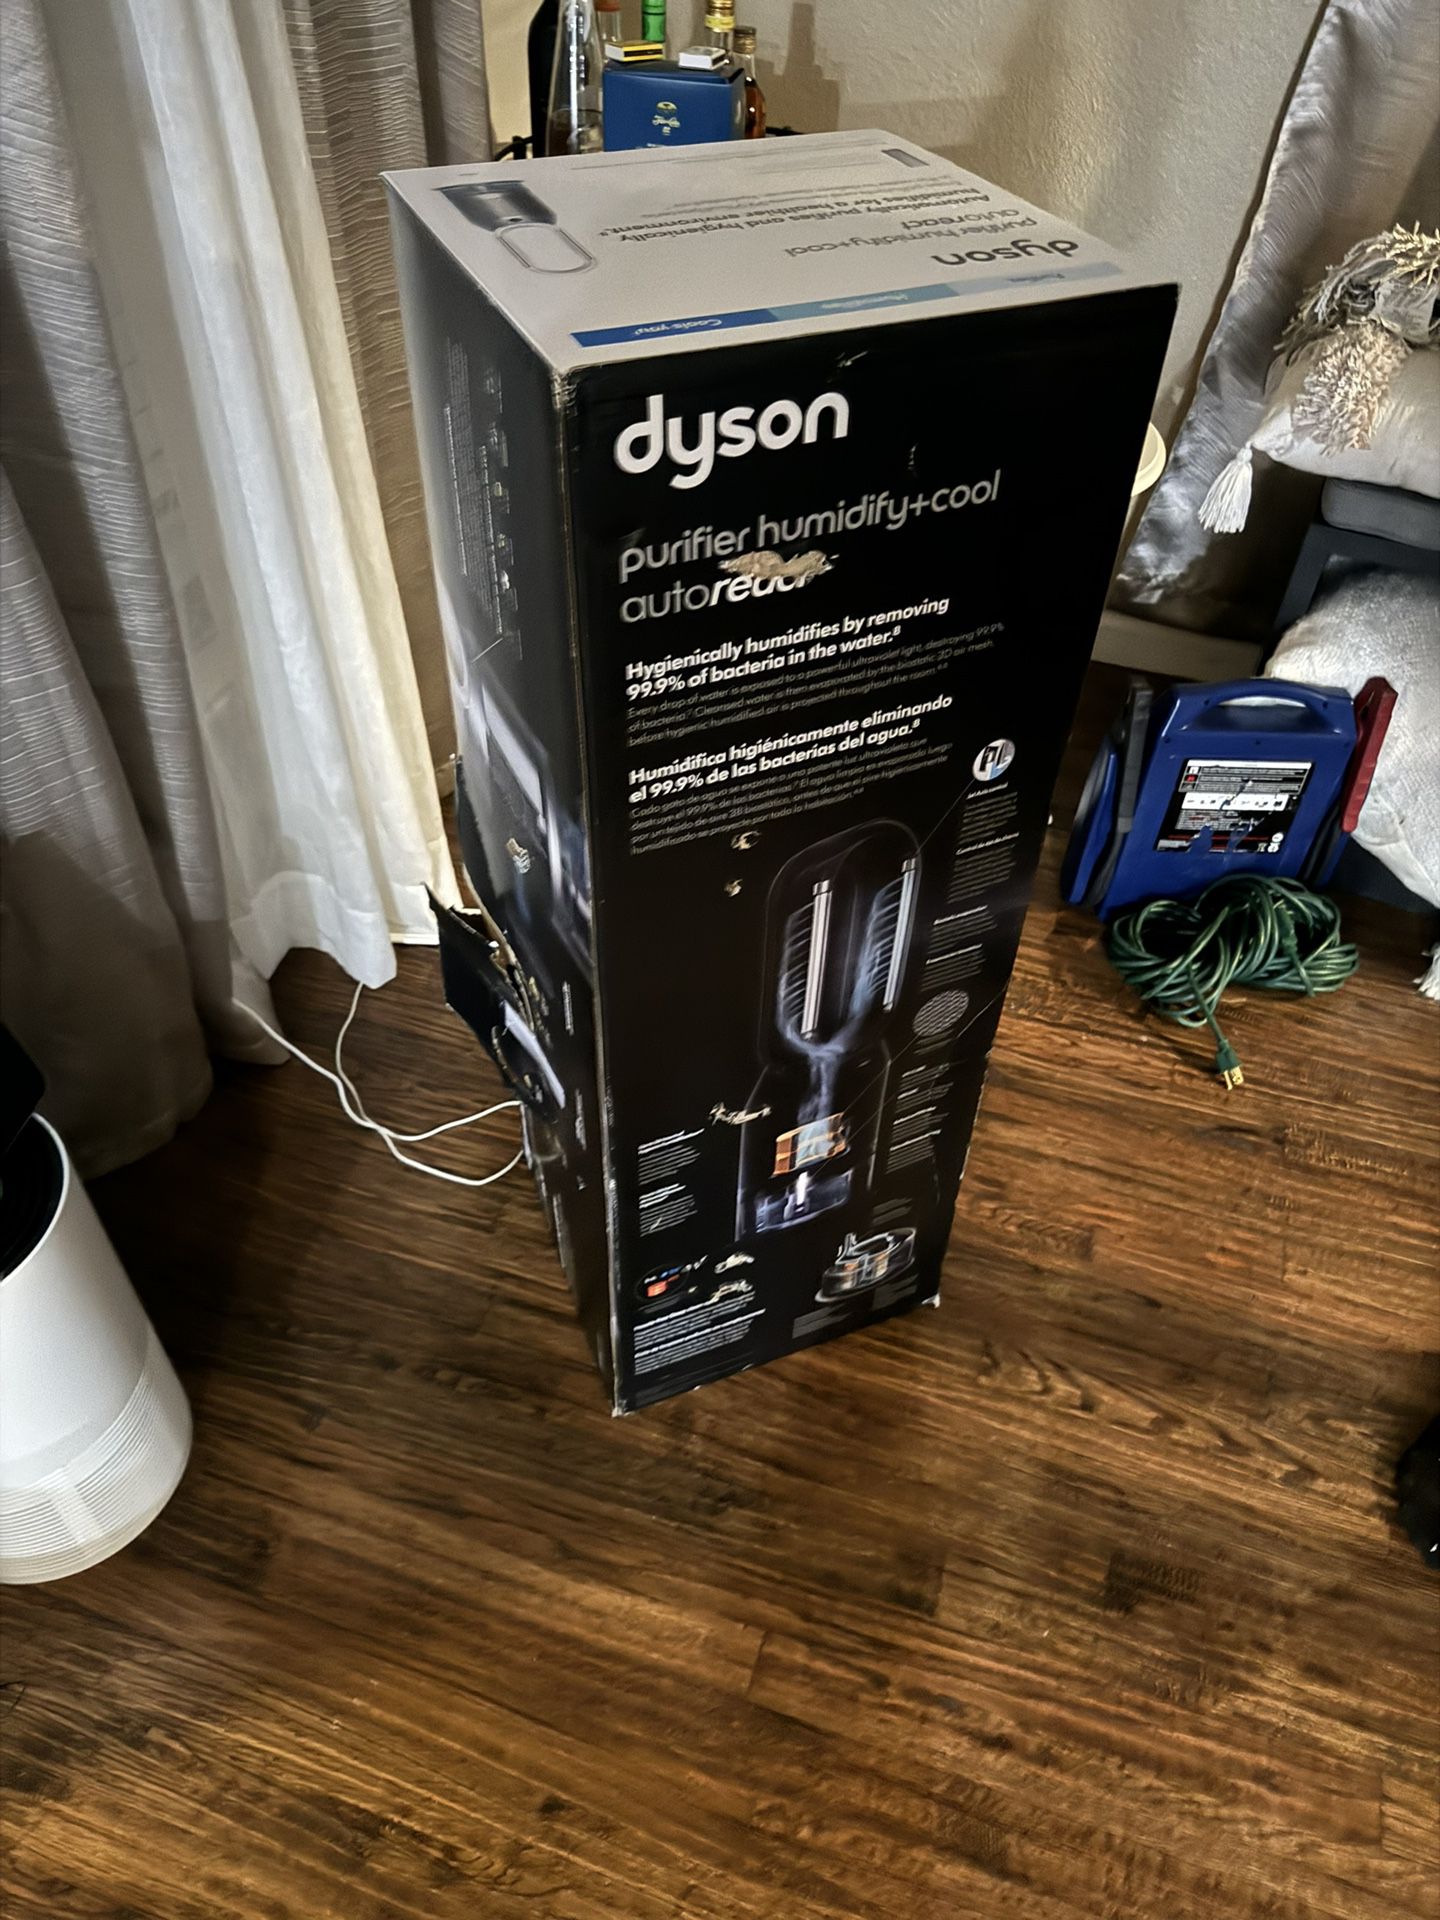 Dyson purifier/humidifier Duo 